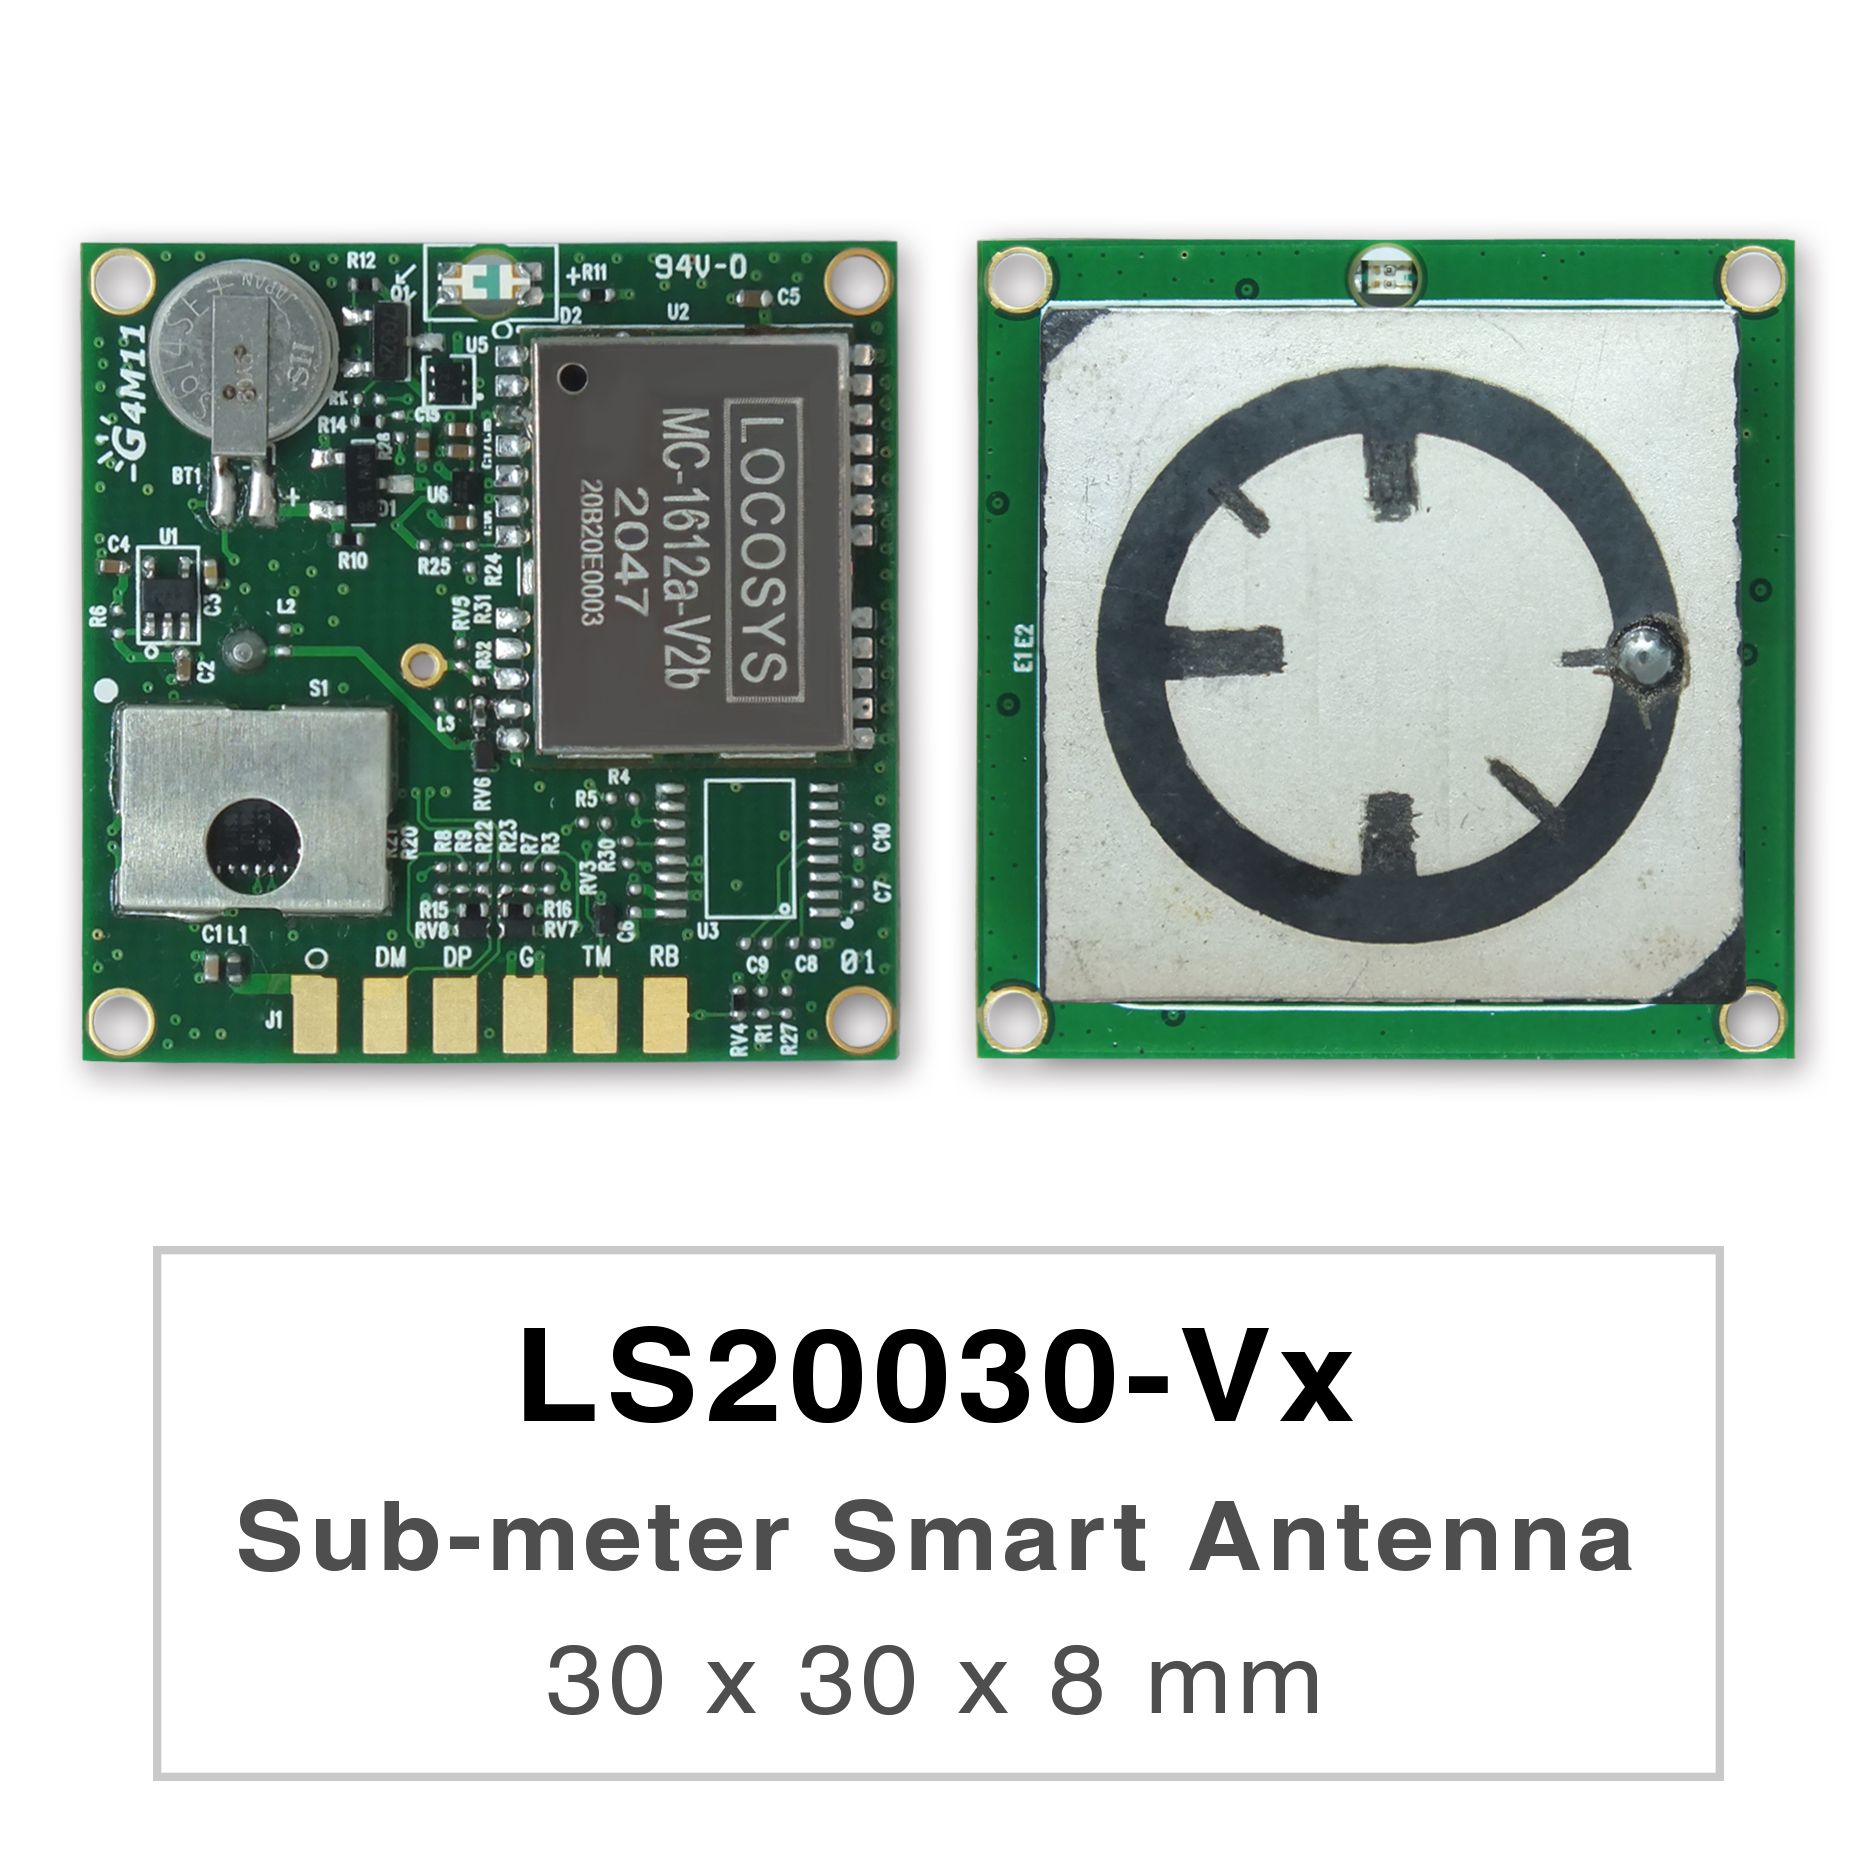 Die Produkte der LS2003x-Vx-Serie sind Hochleistungs-Dualband-GNSS-Smart-Antennenmodule,
     <br />einschließlich einer eingebetteten Antenne und GNSS-Empfängerschaltungen, die für ein breites Spektrum von OEM
     <br />-Systemanwendungen entwickelt wurden.